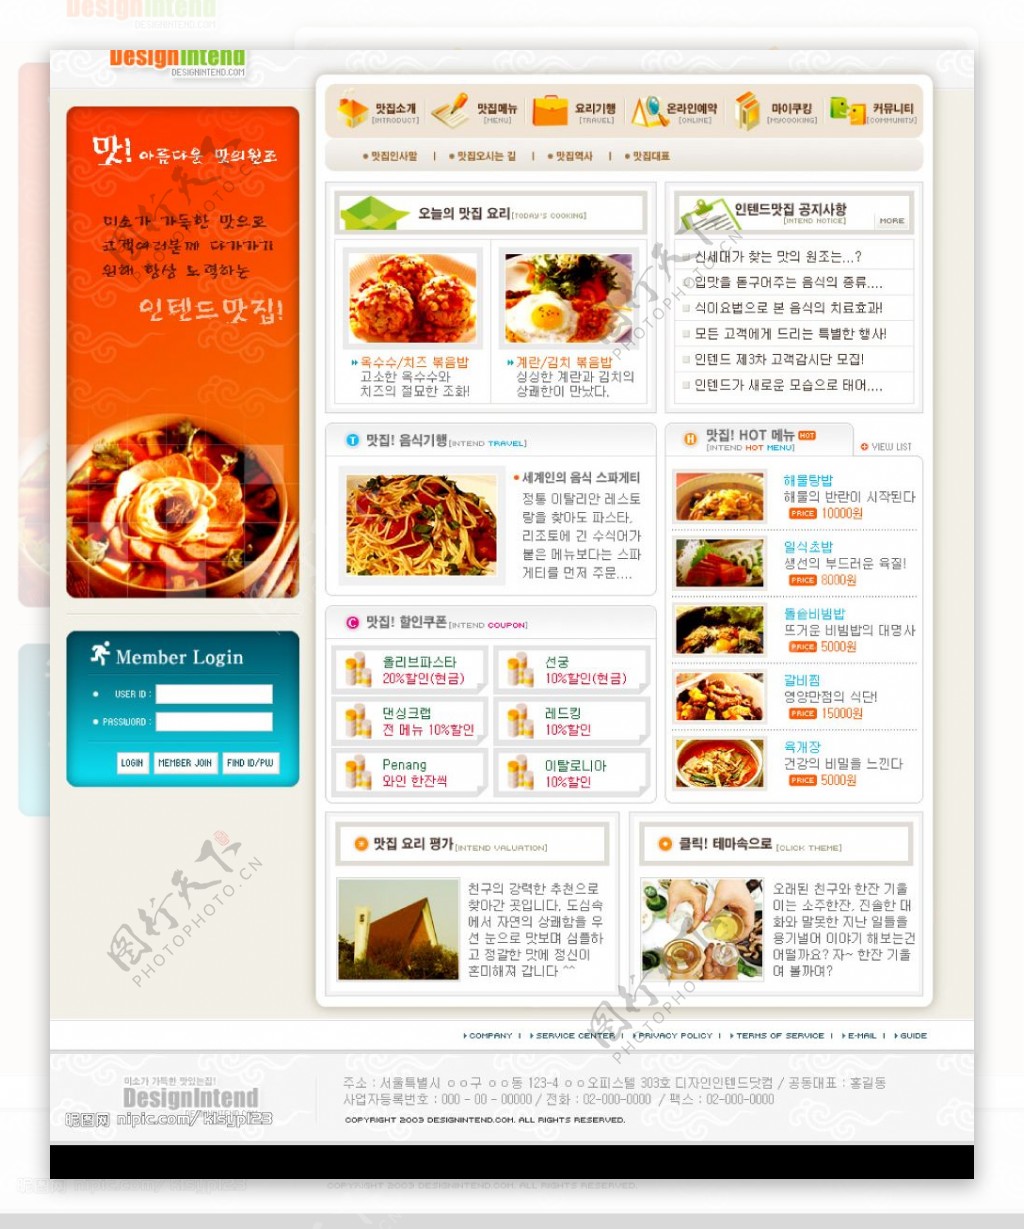 一组食品的网站psd模板3图片